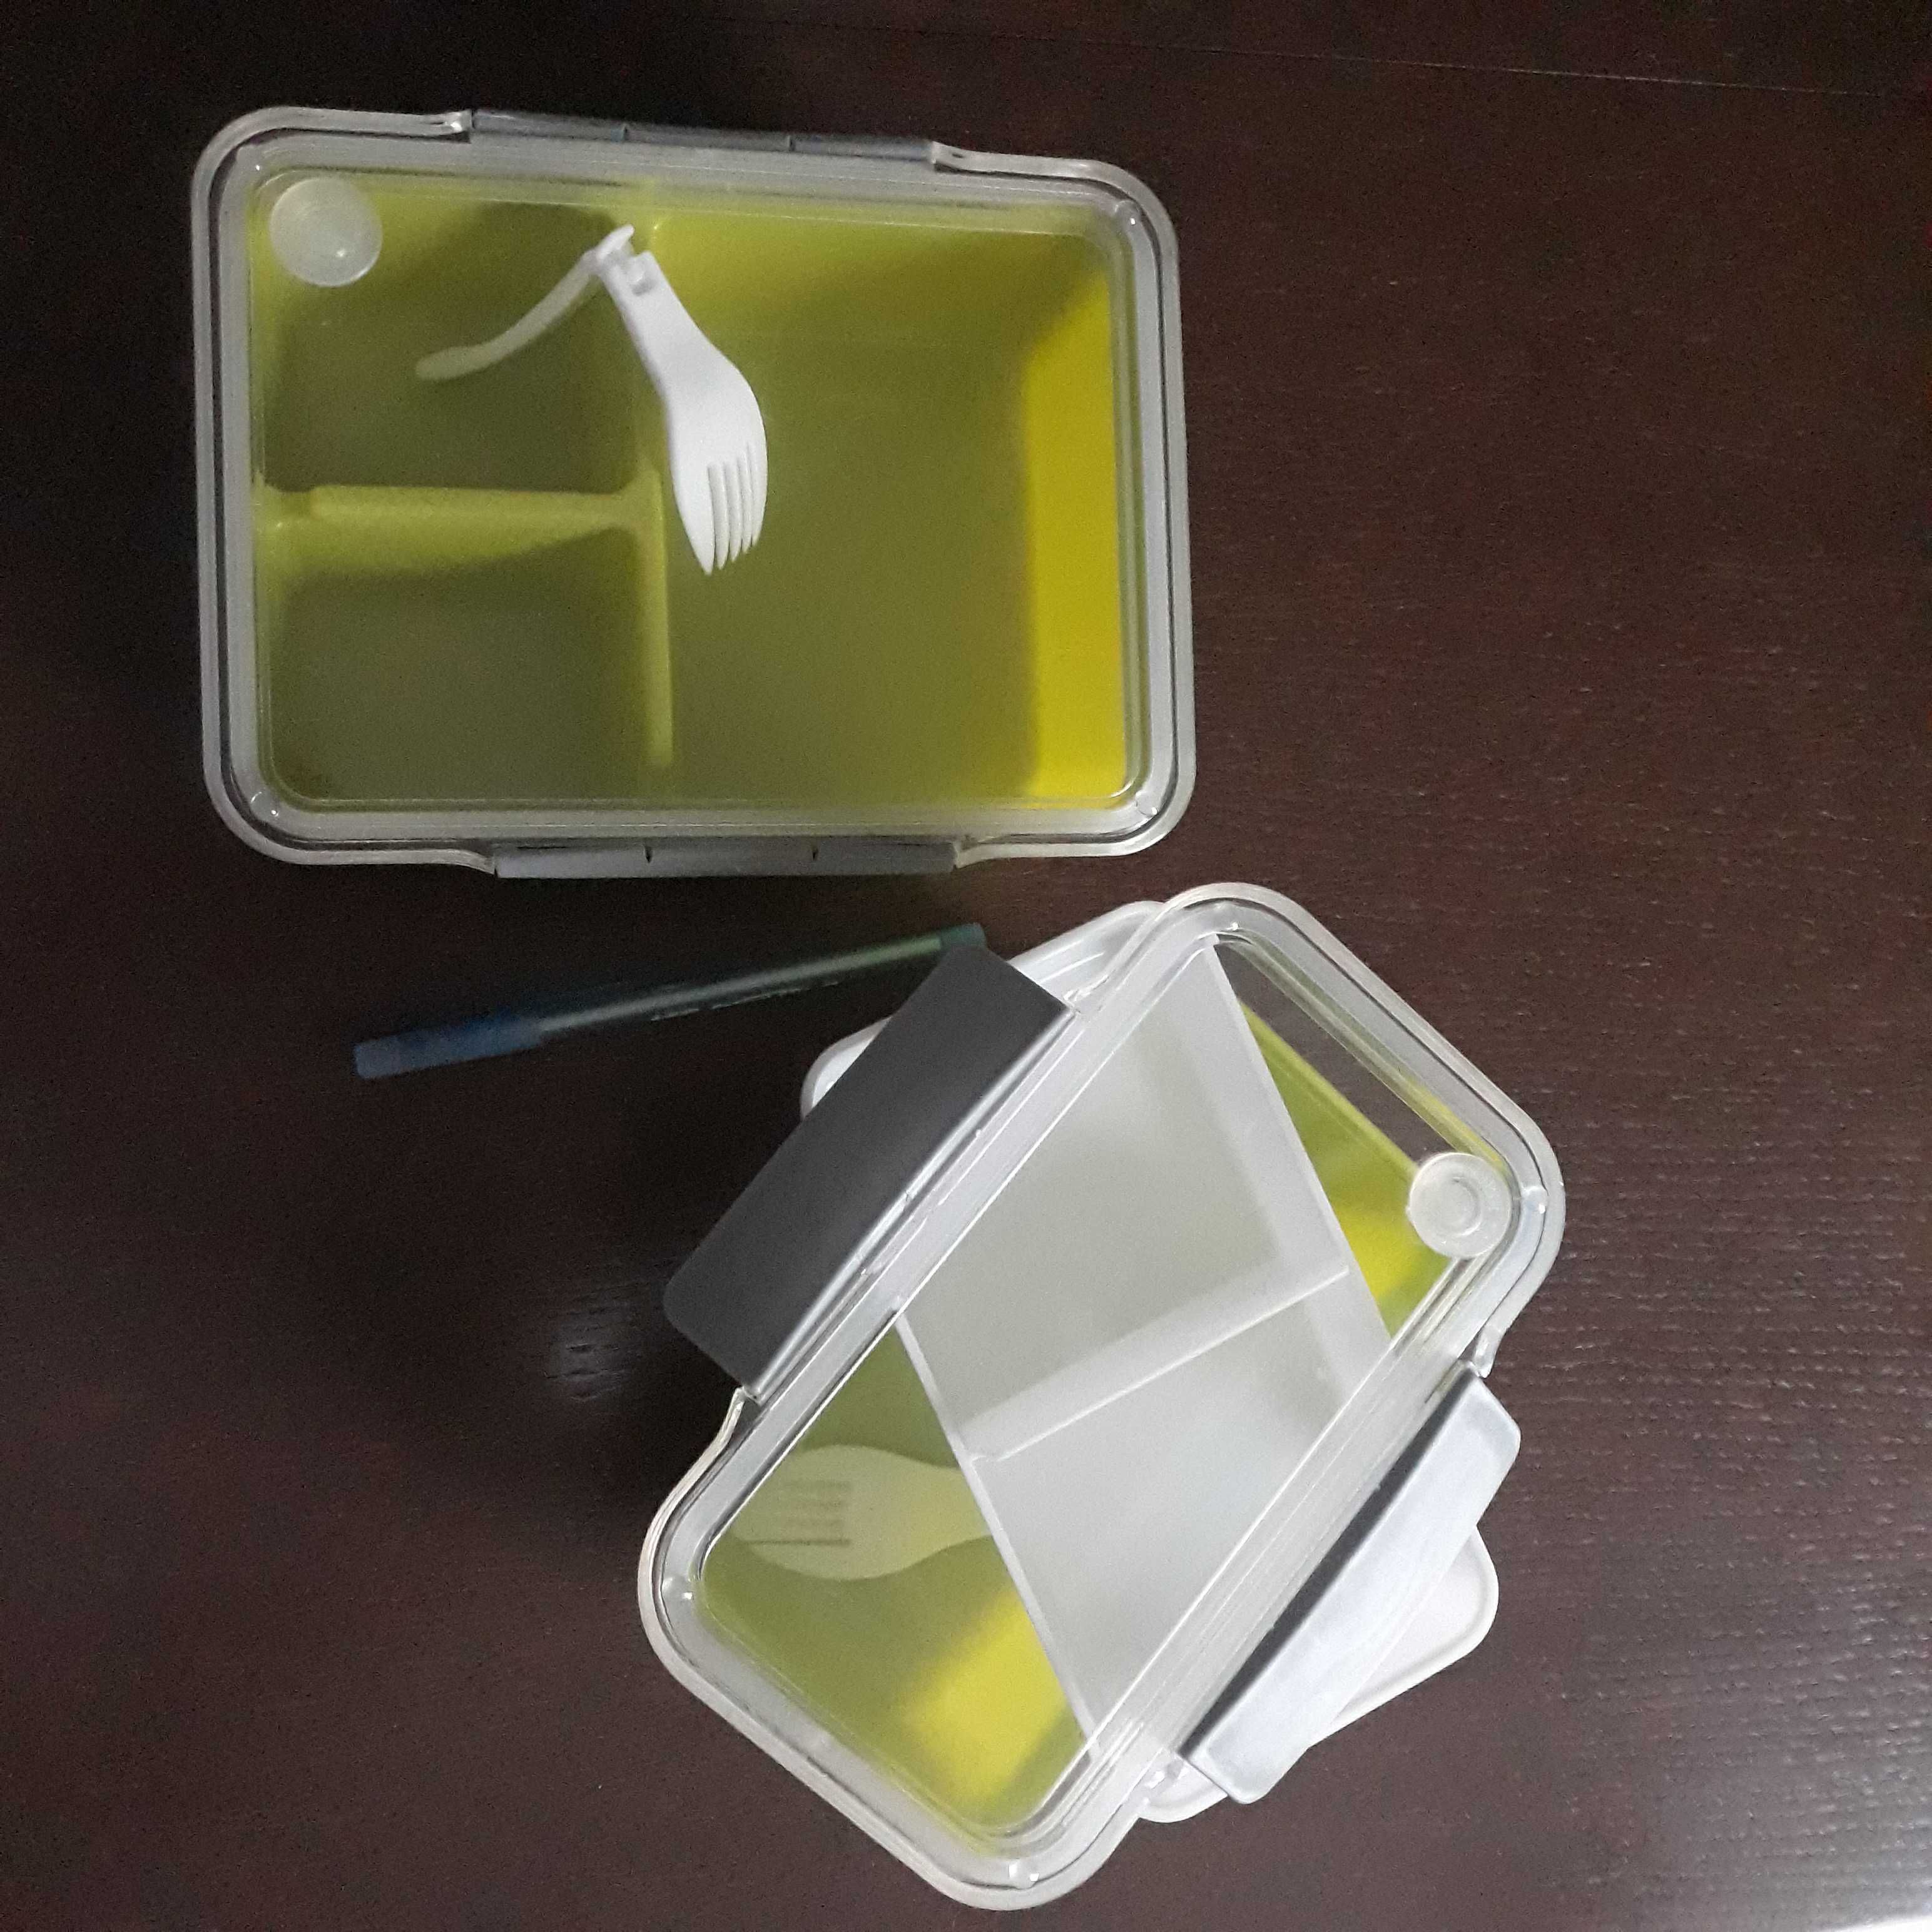 2 lunch boxy, dieta, pudelko na obiad, zielone pudelka na lunch